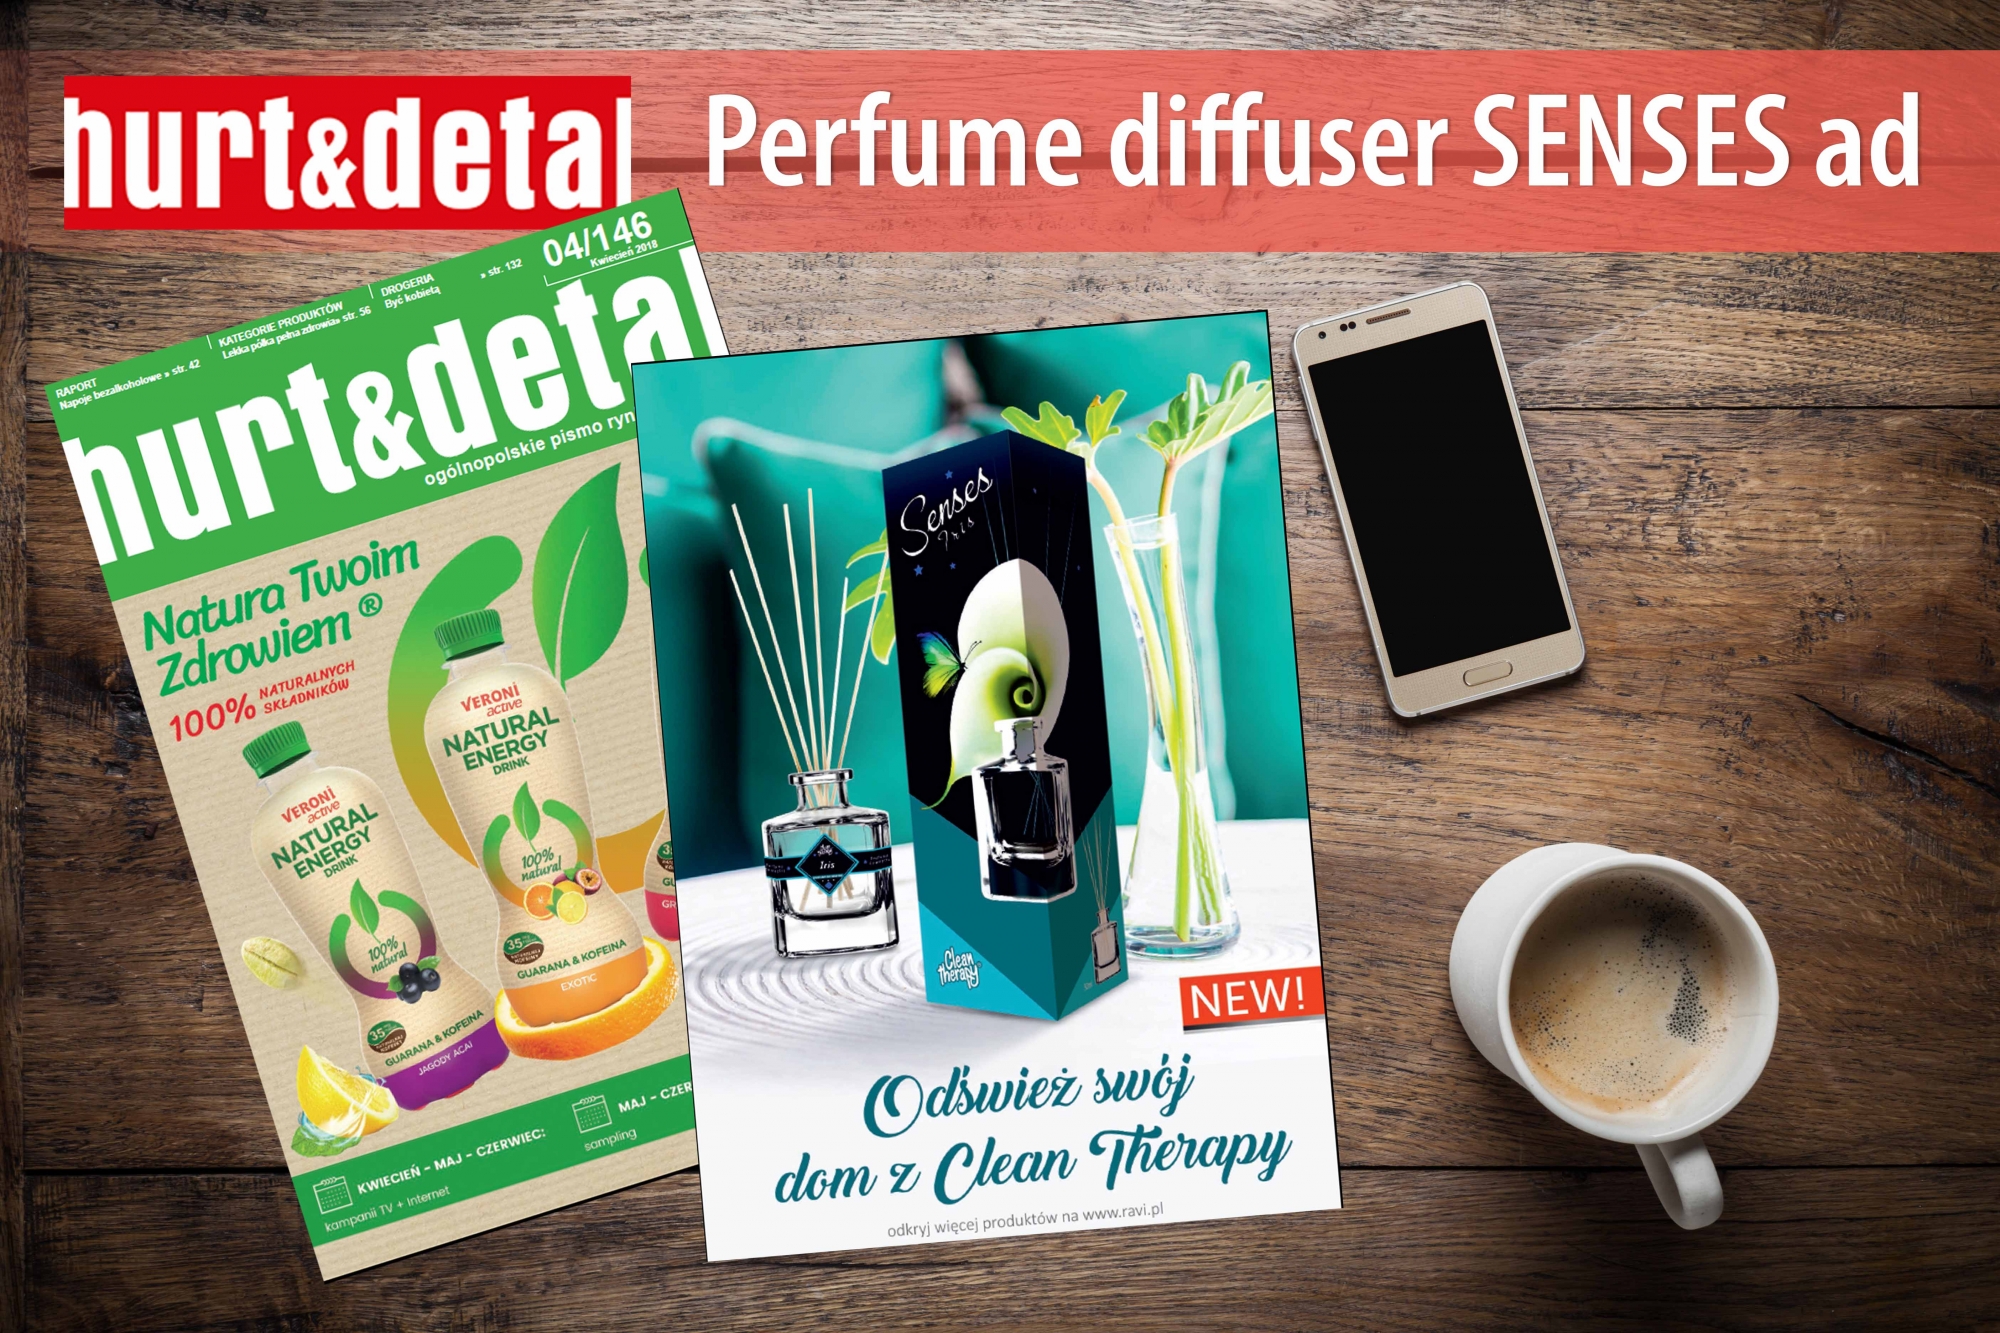 April 2018 Perfume diffuser Senses ad